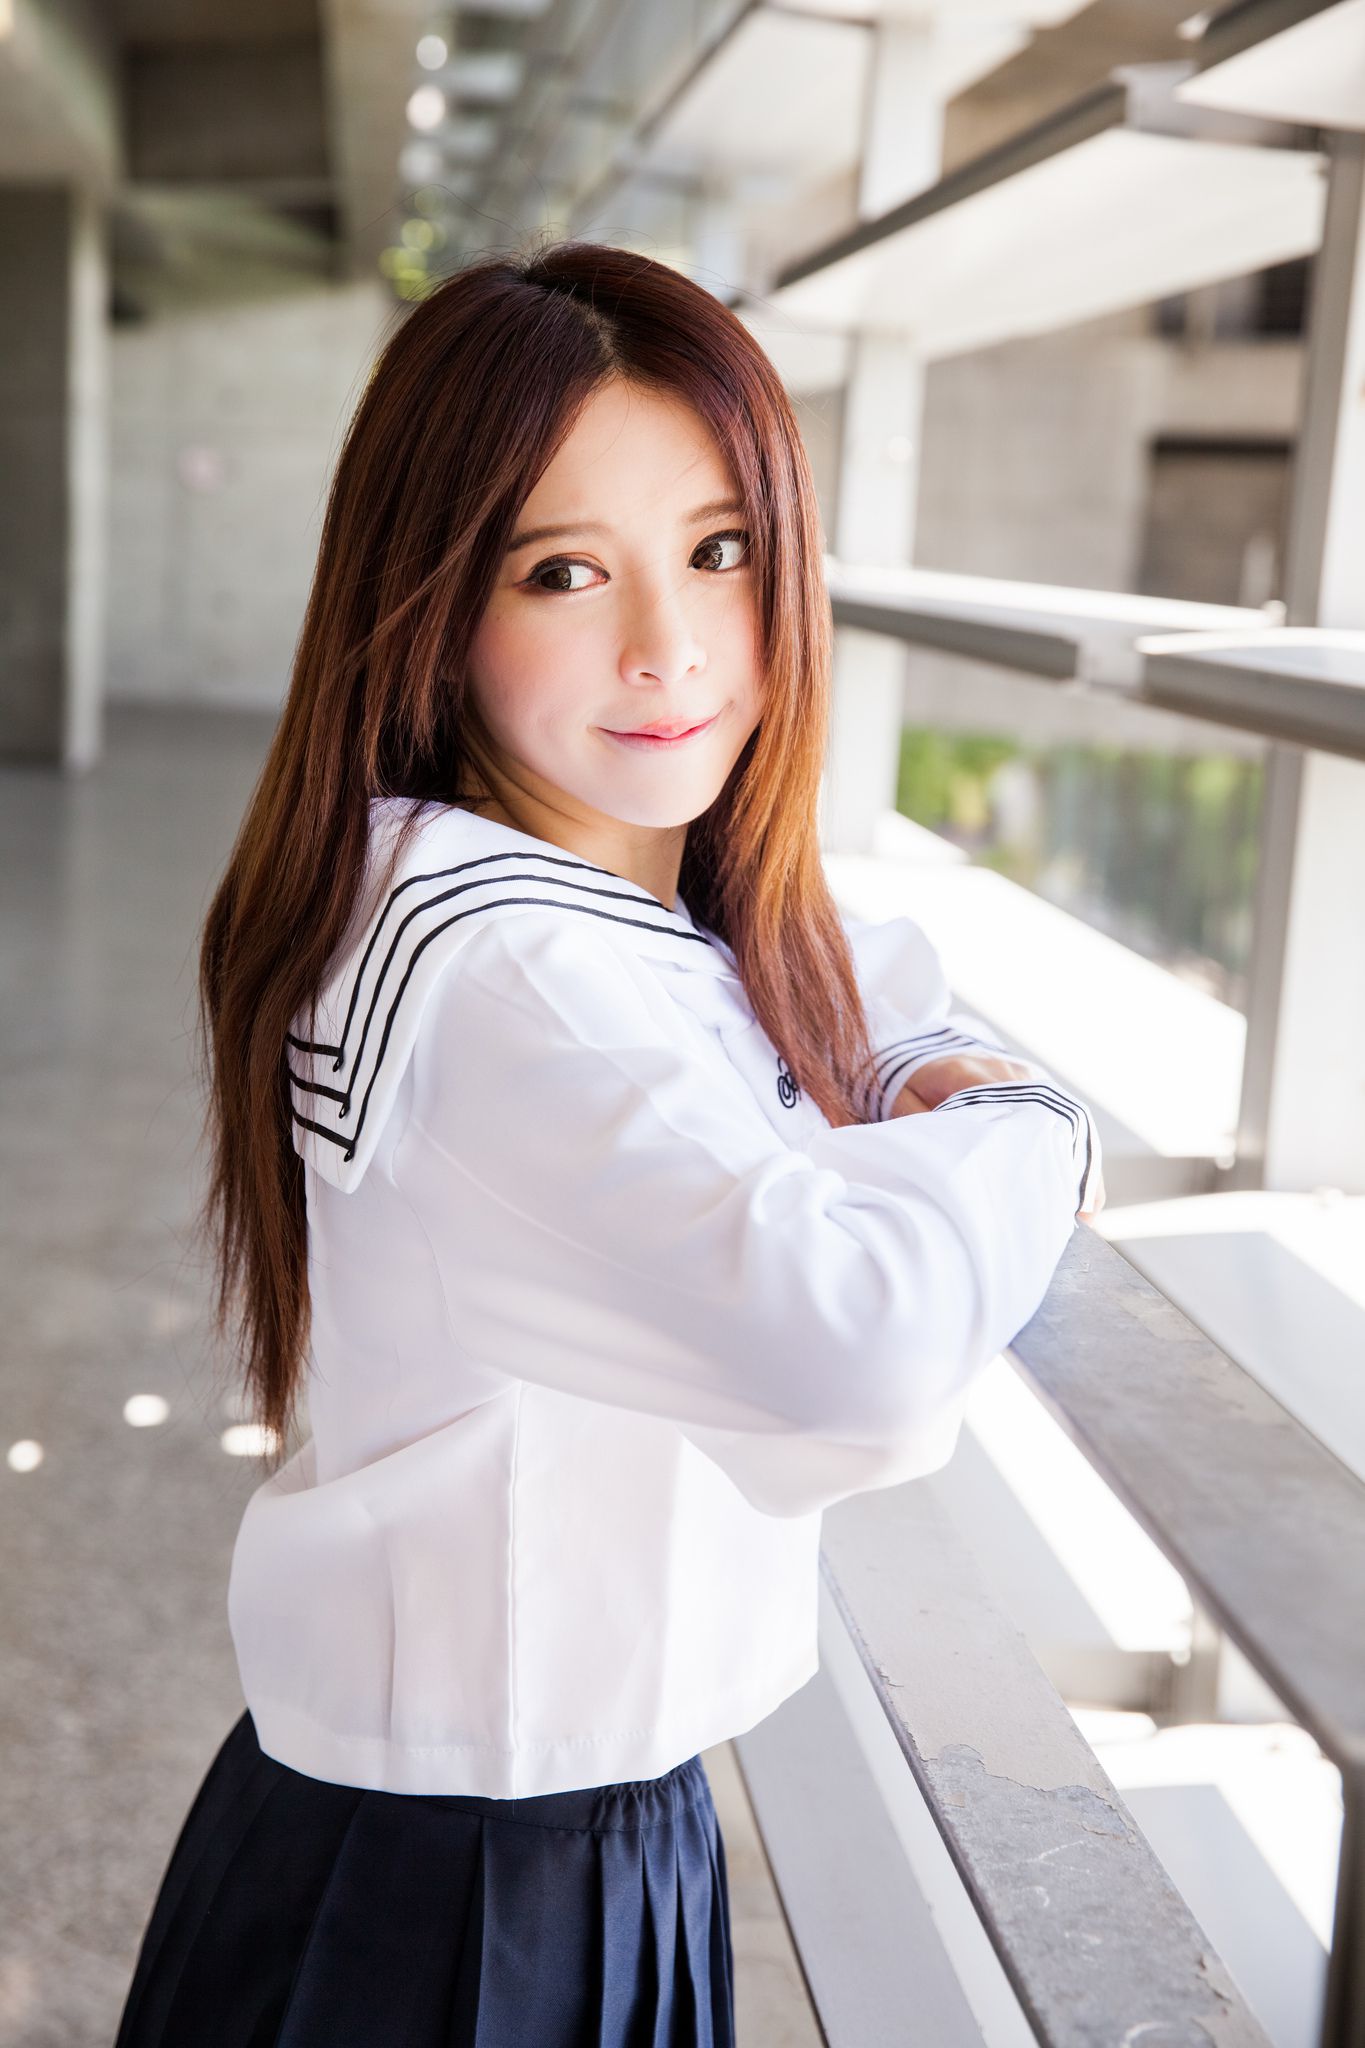 清纯白衬衫短裙学生装美女-1-6TU